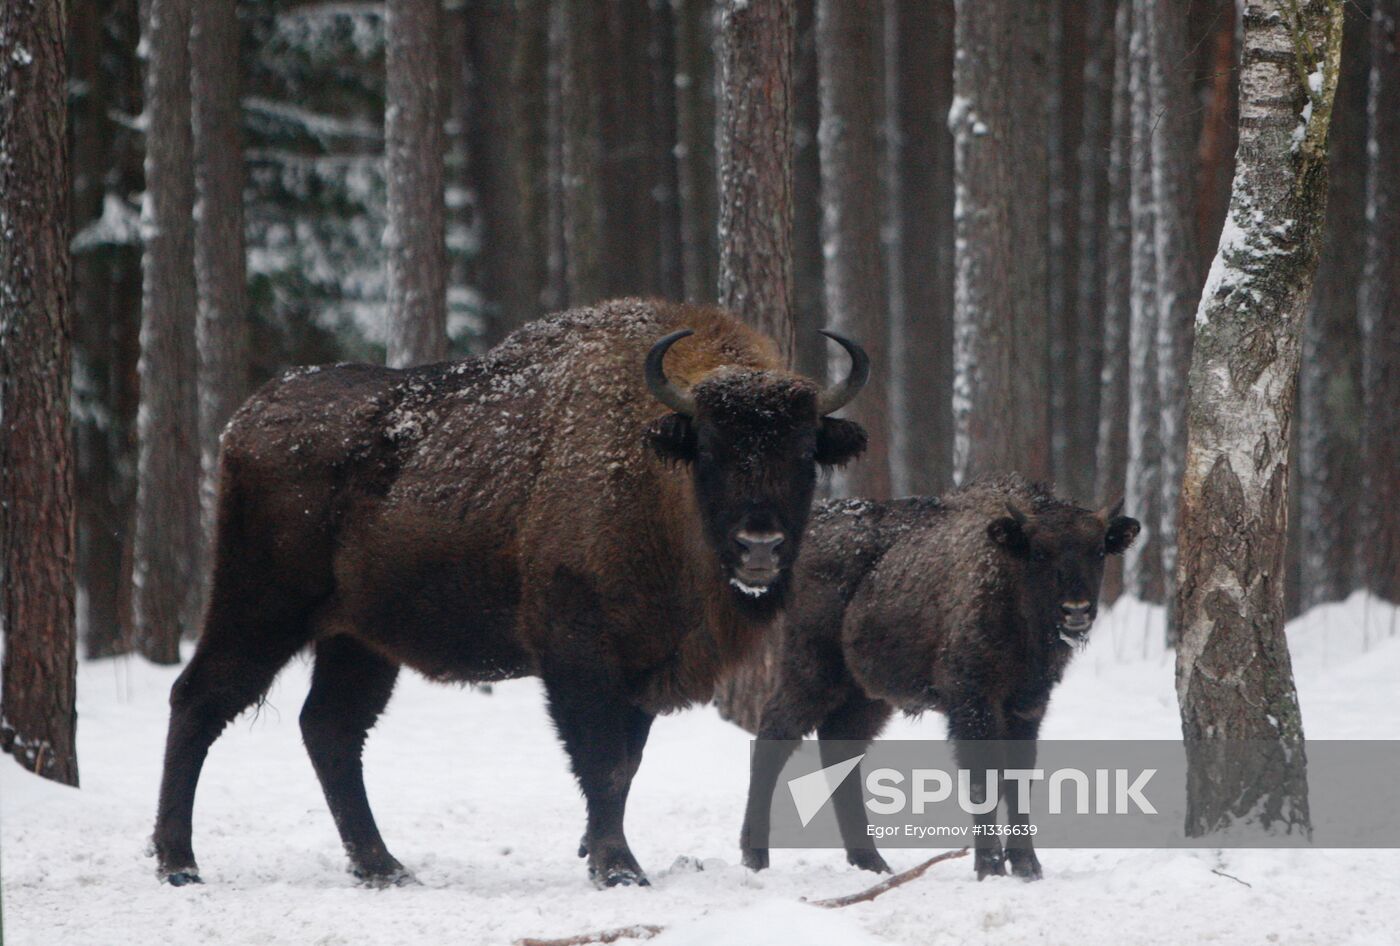 Bison nursery in Minsk region